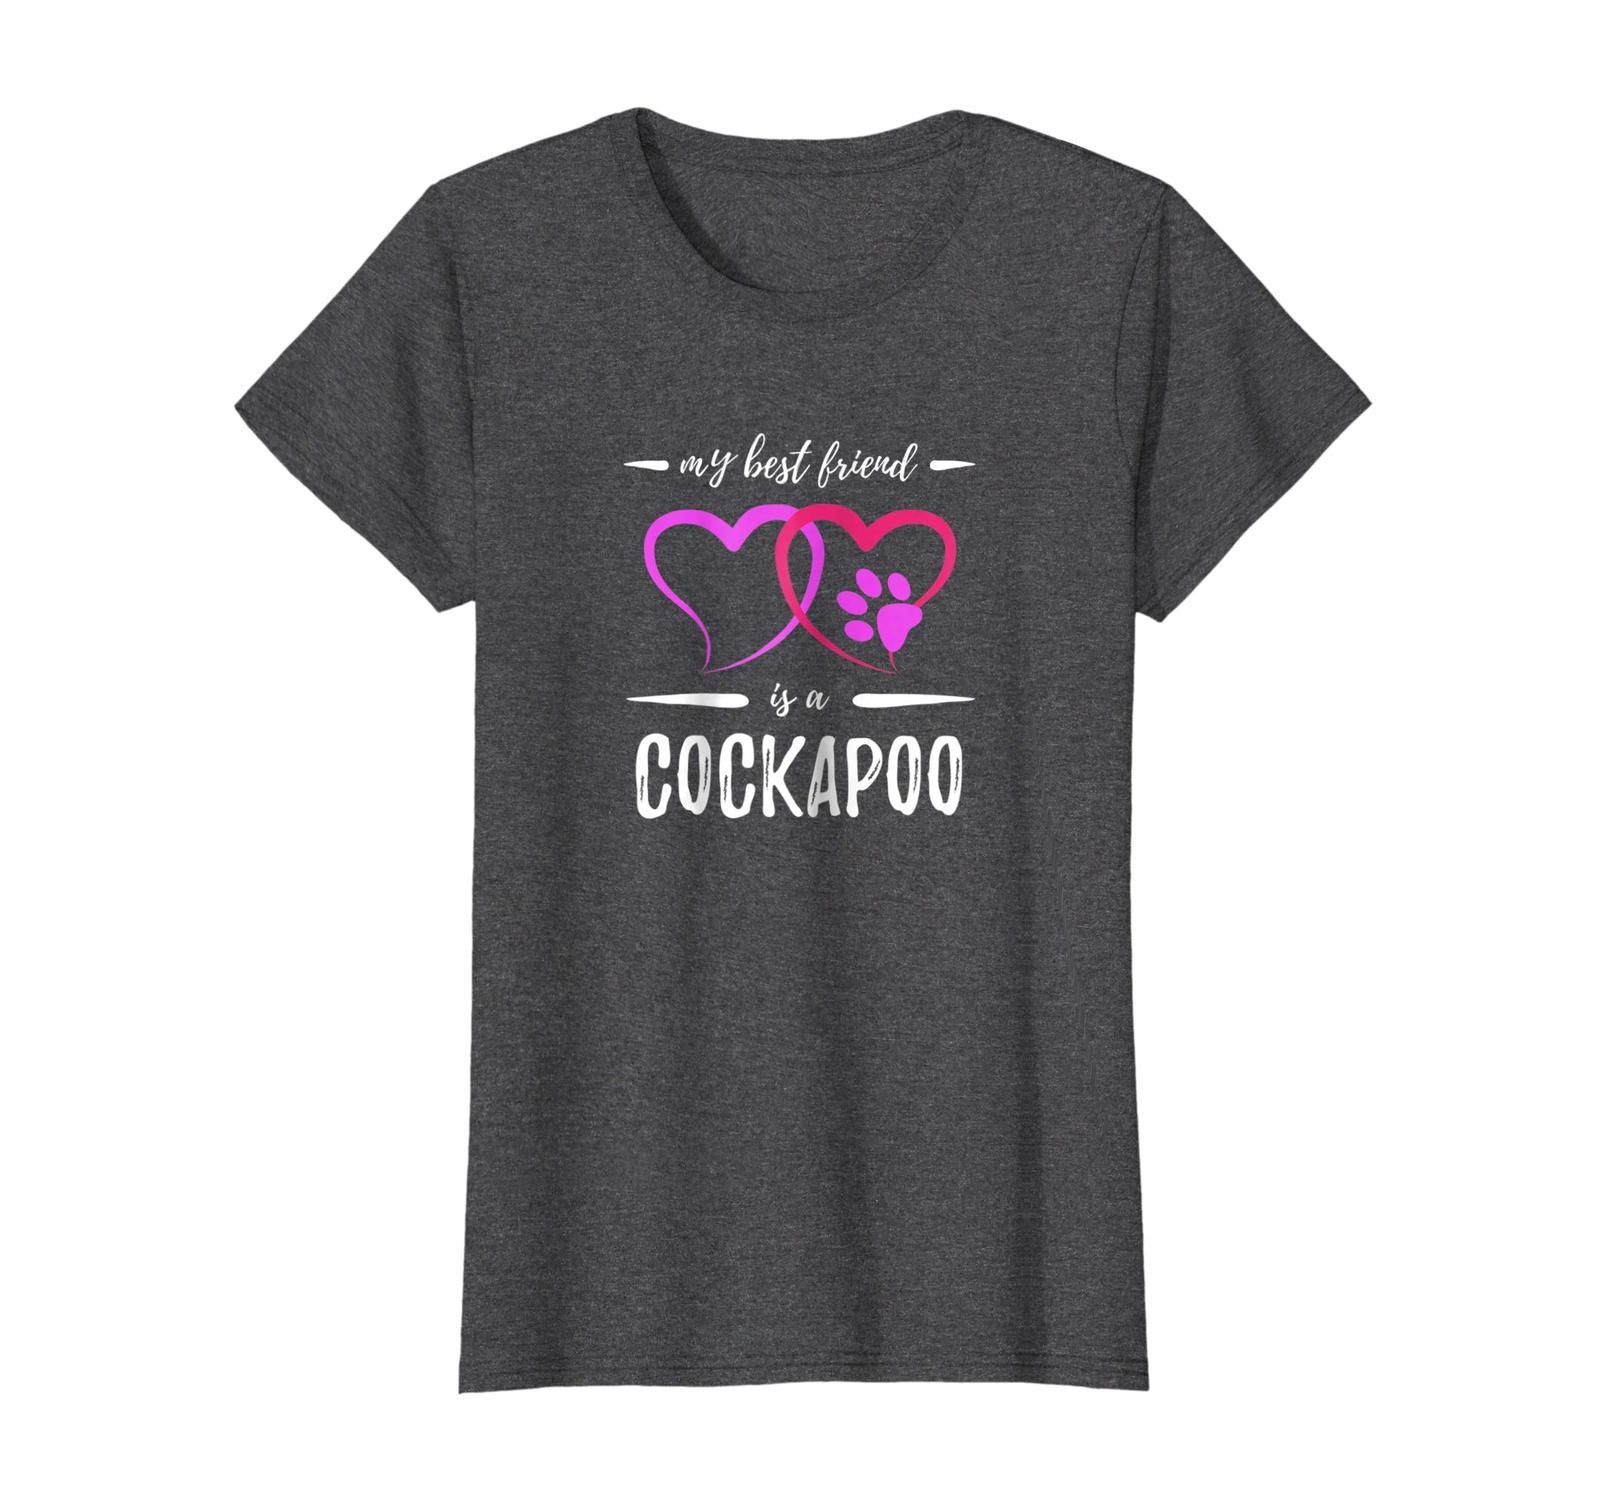 Dog Fashion - Best Friend Cockapoo Shirt Funny Dog Mom Gift Idea Wowen